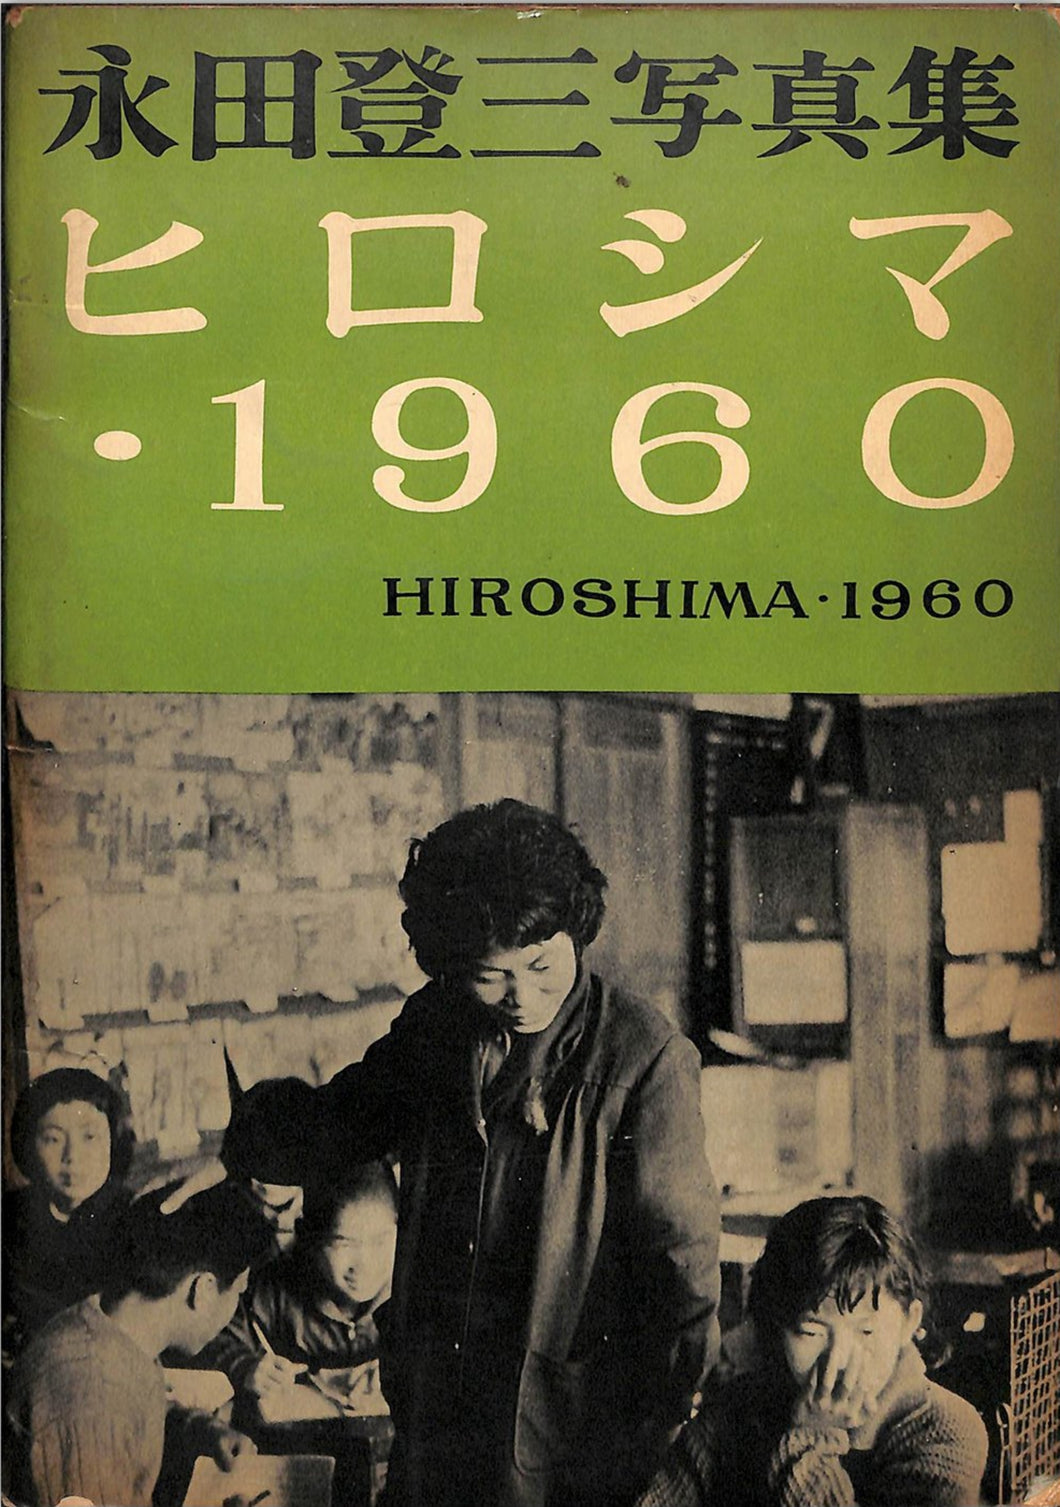 永田登三写真集 ヒロシマ・1960 HIROSHIMA・1960